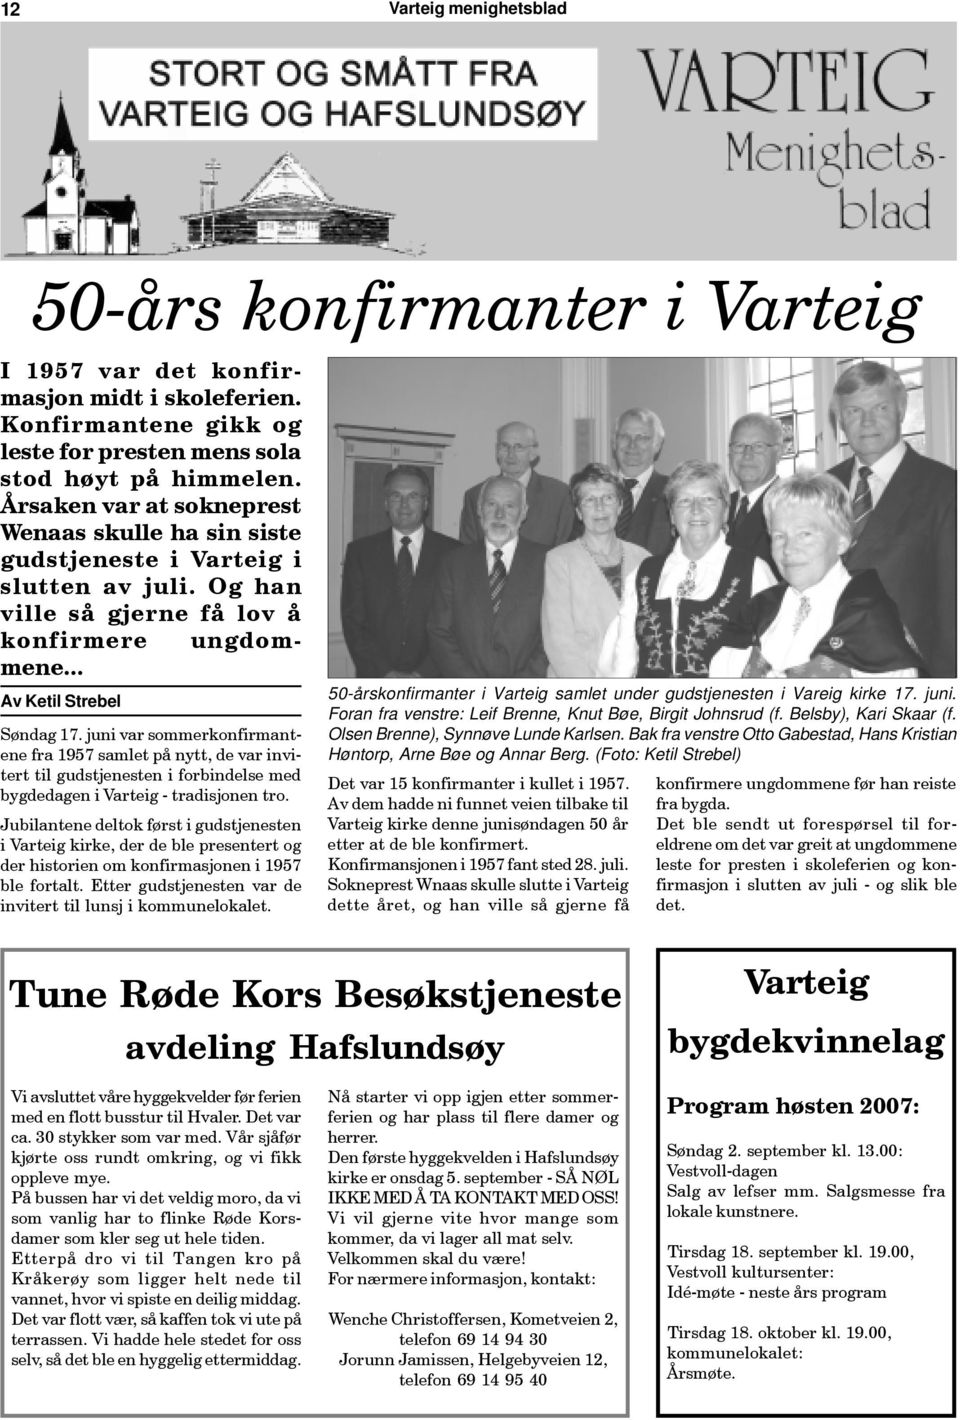 juni var sommerkonfirmantene fra 1957 samlet på nytt, de var invitert til gudstjenesten i forbindelse med bygdedagen i Varteig - tradisjonen tro.